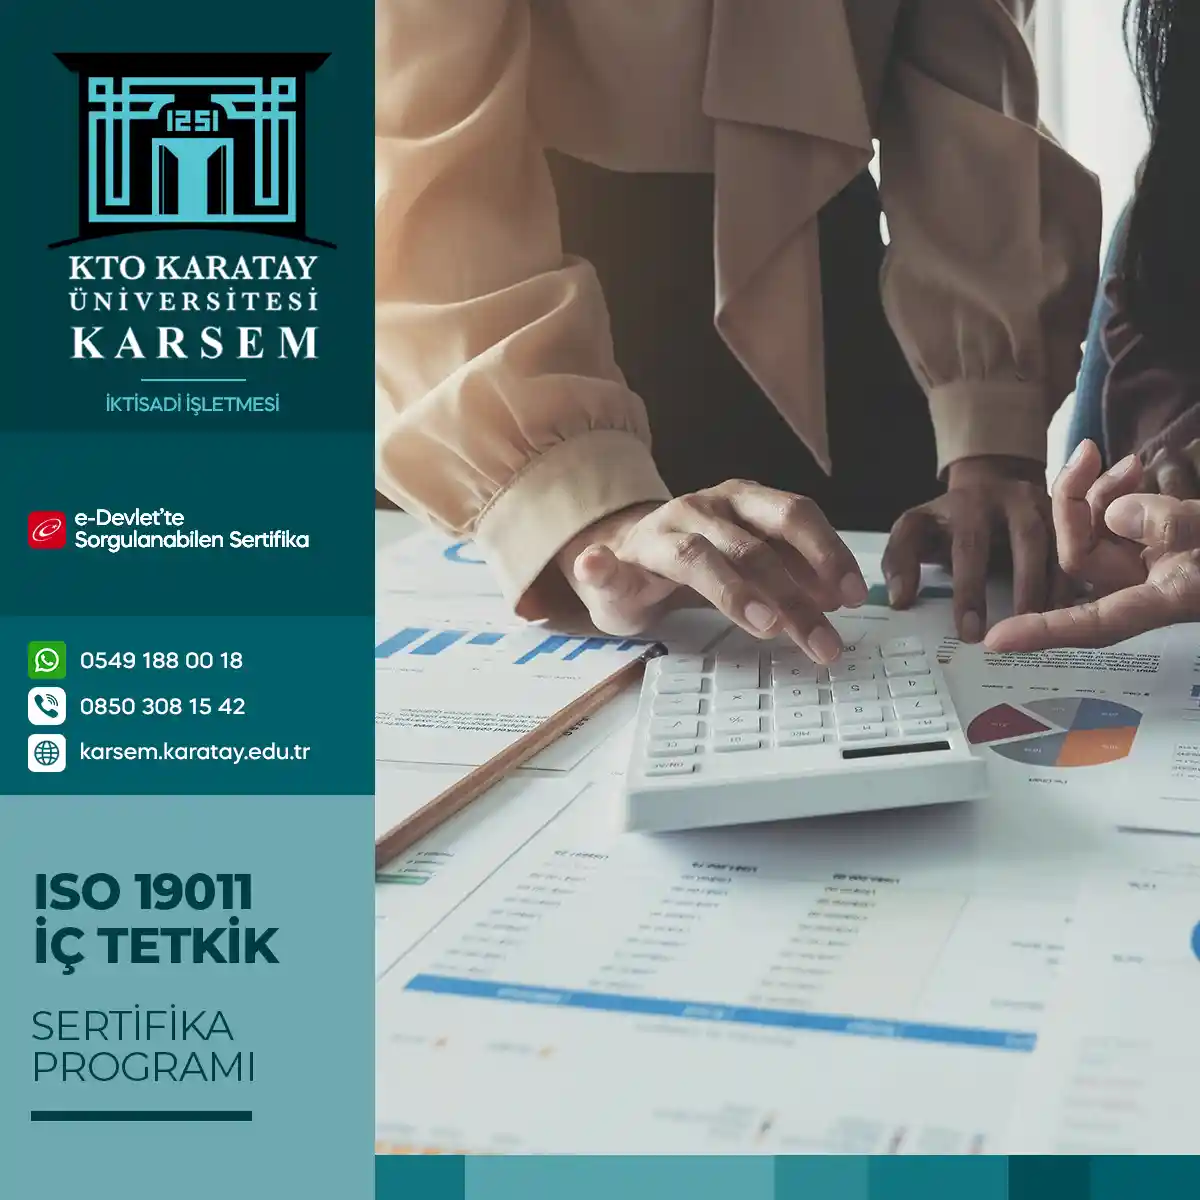 ISO 19011 İç Tetkik Sertifika Programı